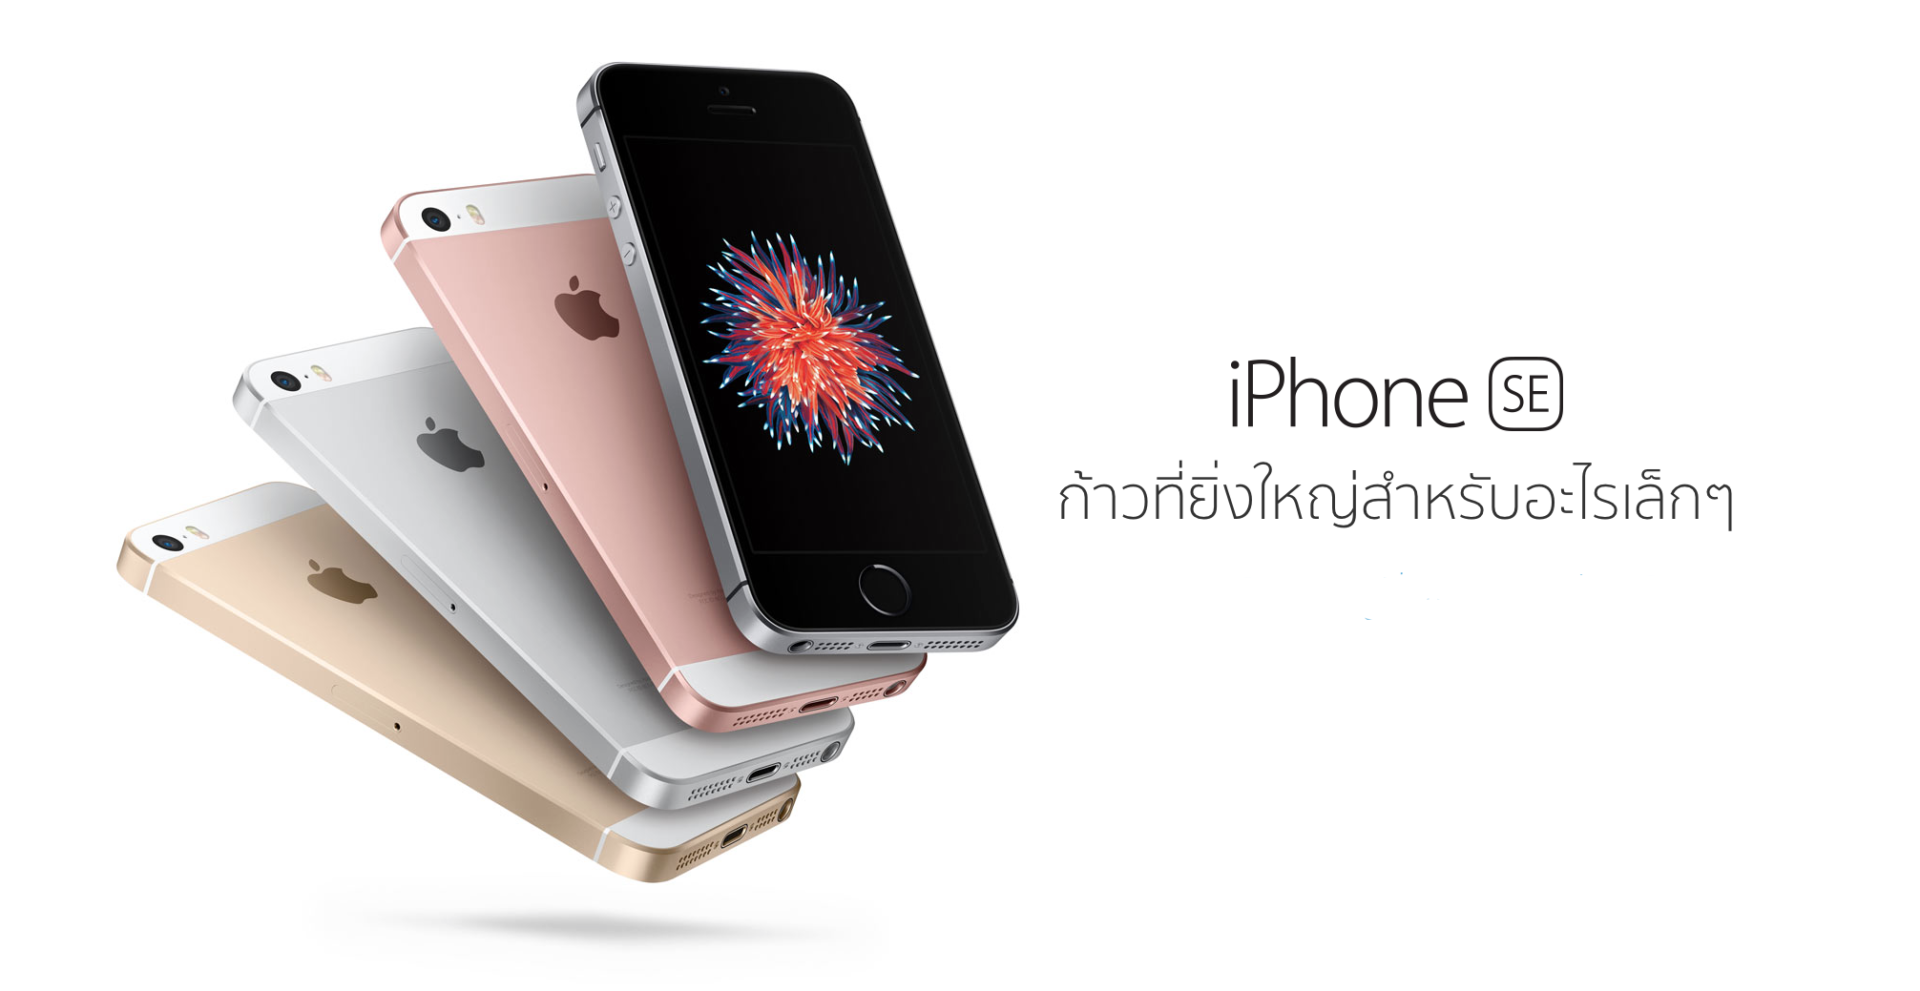 ด่วน!! Apple ประเทศไทยเผยราคา iPhone SE หน้าจอเล็กสเปกแรงแล้ว